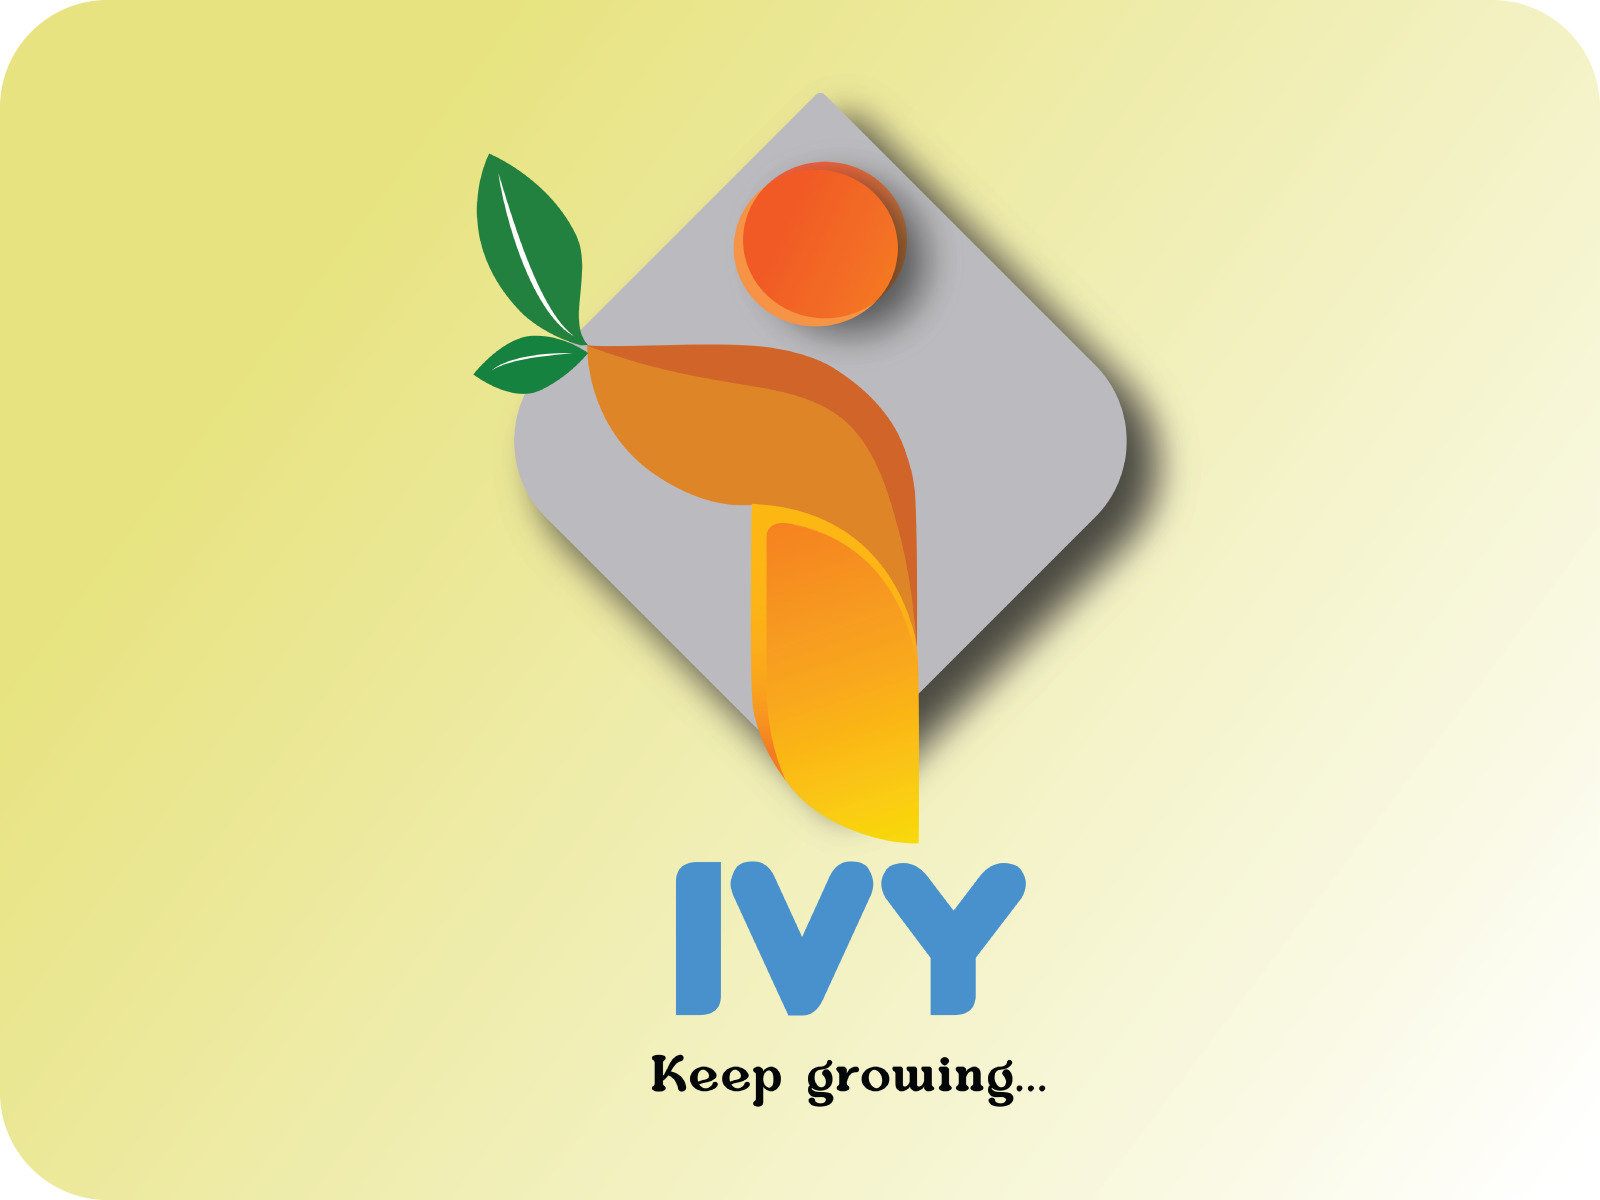 IVY Logo by Yogesh R on Dribbble